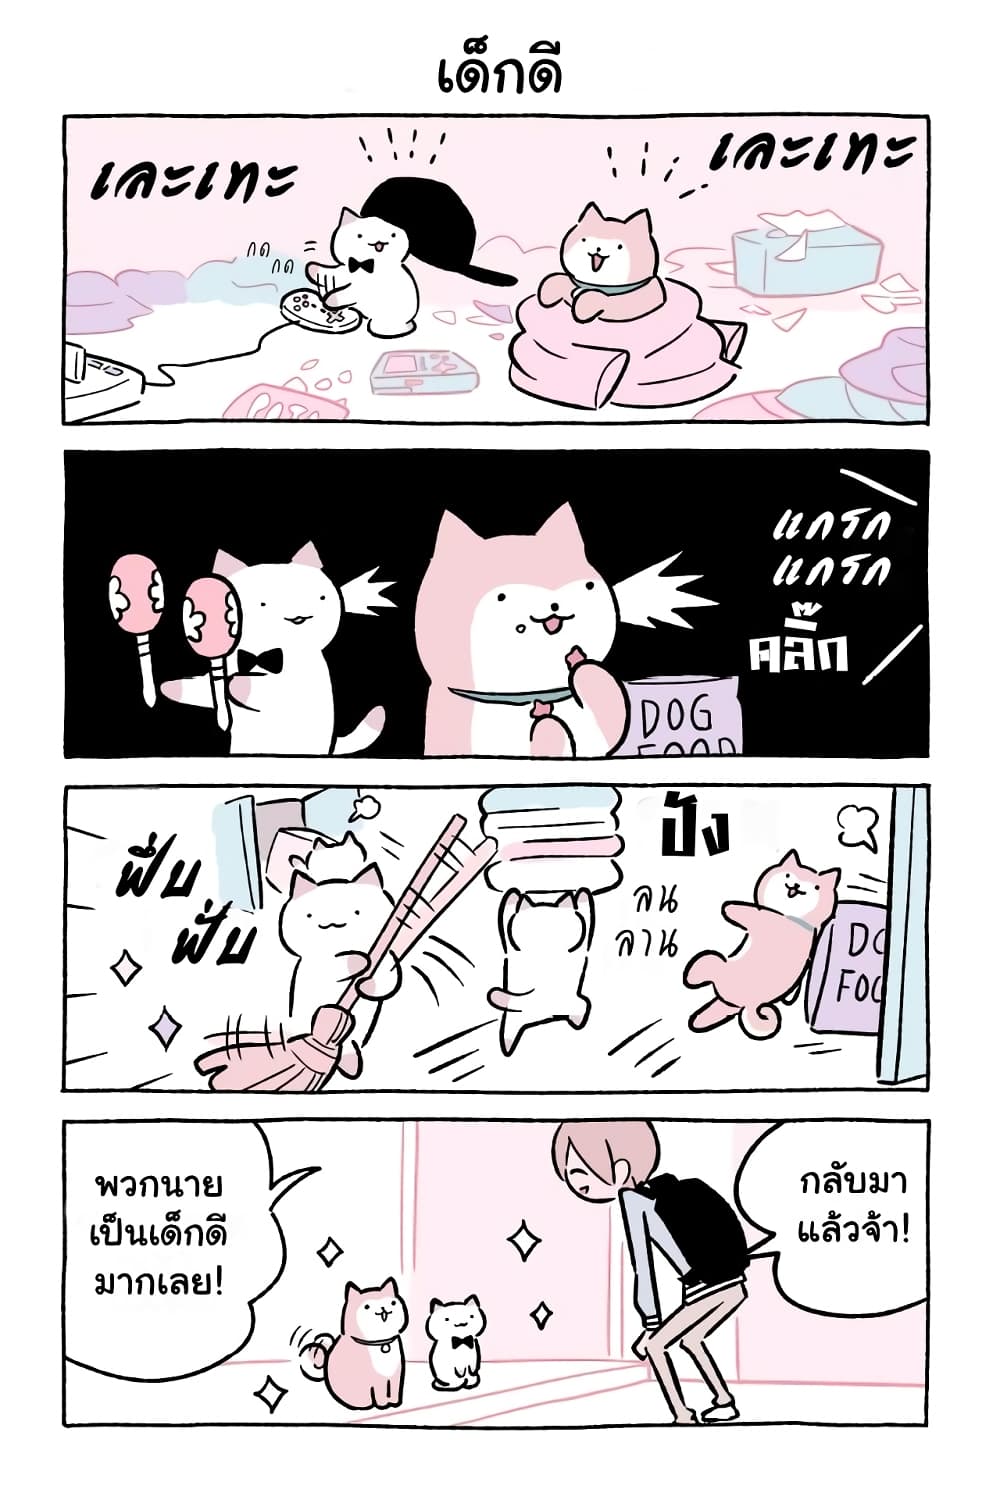 Wonder Cat Kyuu chan คิวจัง แมวมหัศจรรย์ ตอนที่ 45 (11)